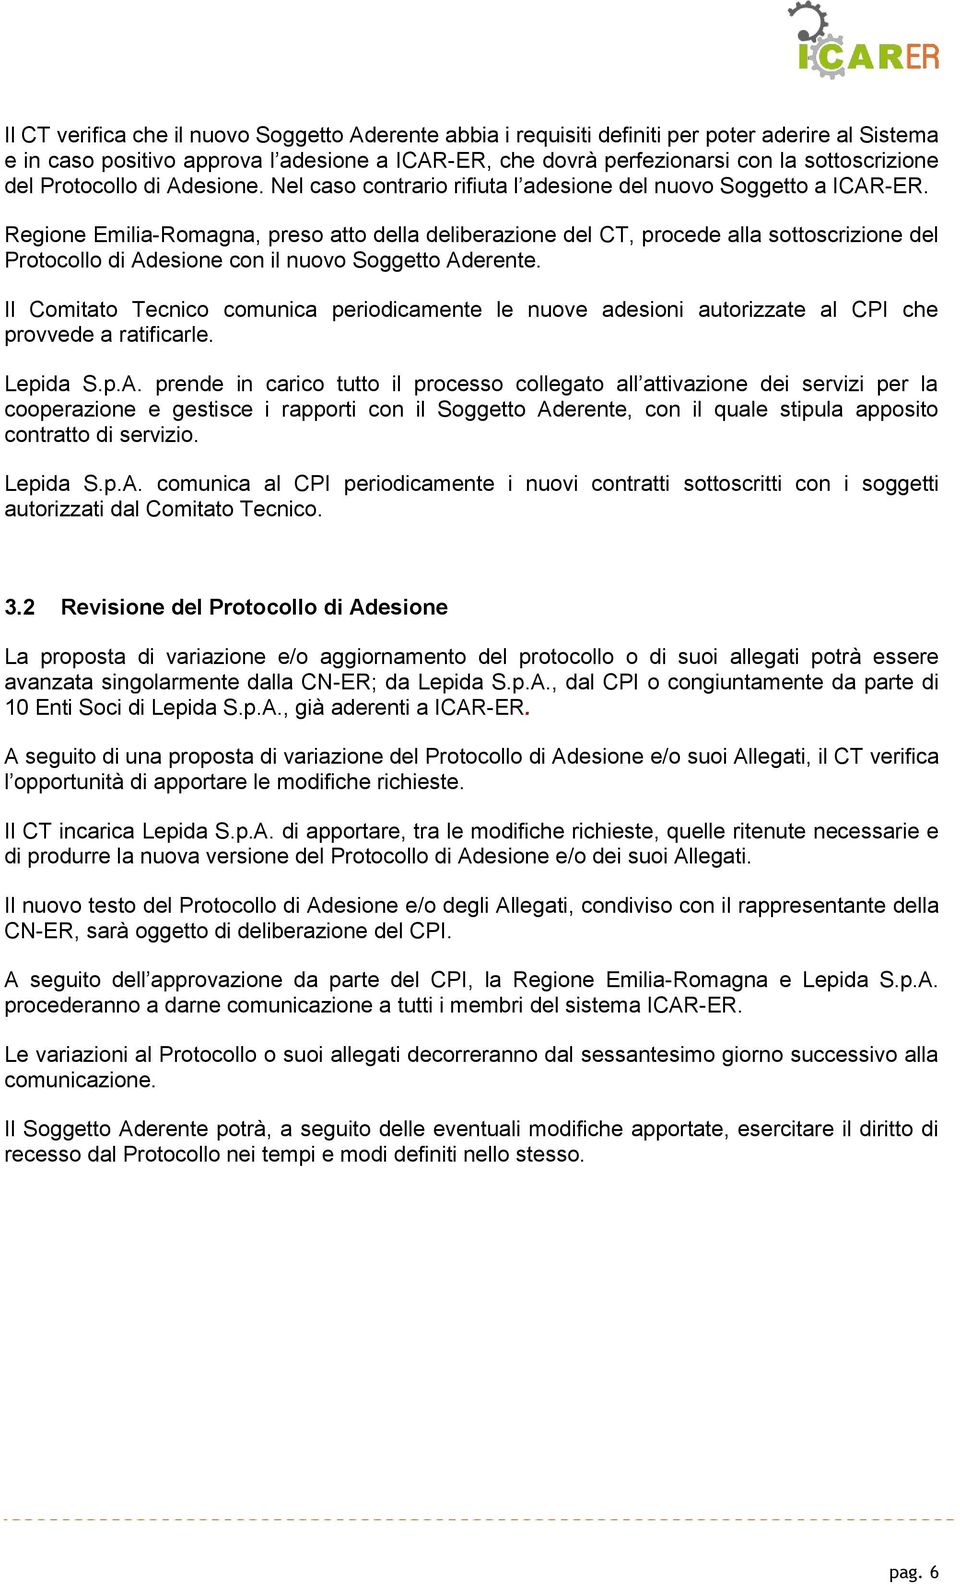 Regione Emilia-Romagna, preso atto della deliberazione del CT, procede alla sottoscrizione del Protocollo di Adesione con il nuovo Soggetto Aderente.